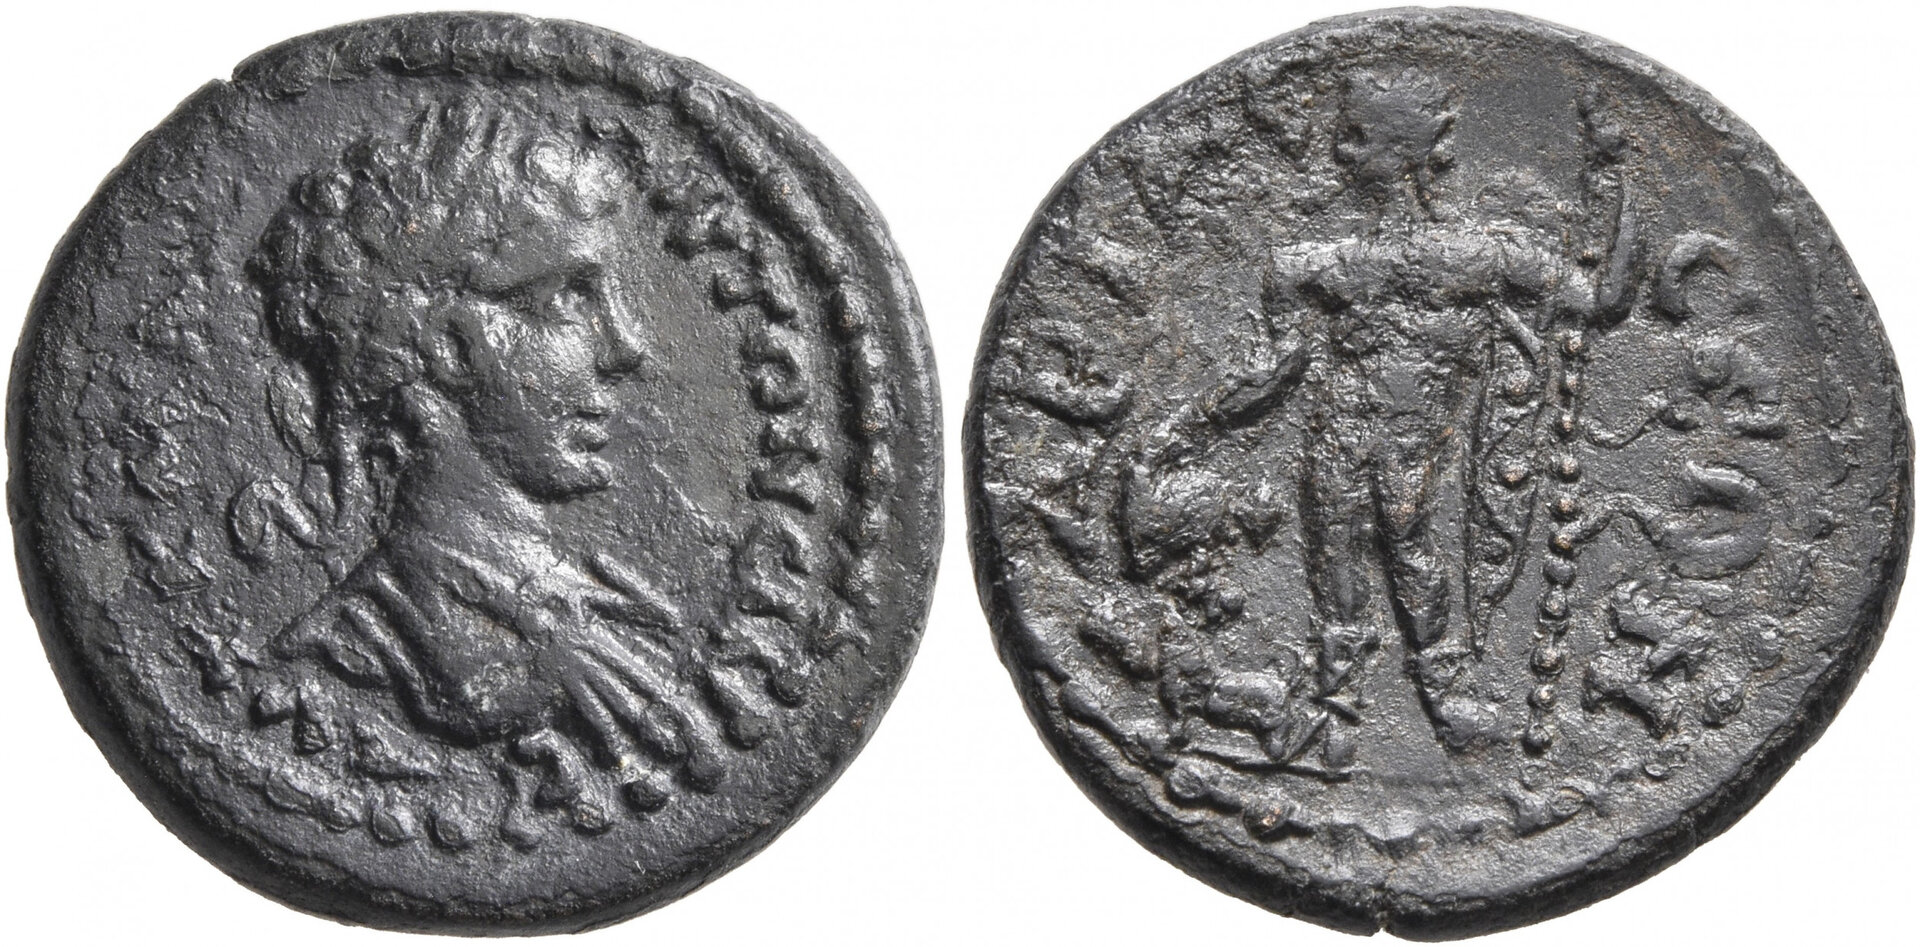 Caracalla AE Pisidia Ariassus Lindgren 1264 Vogl.jpg